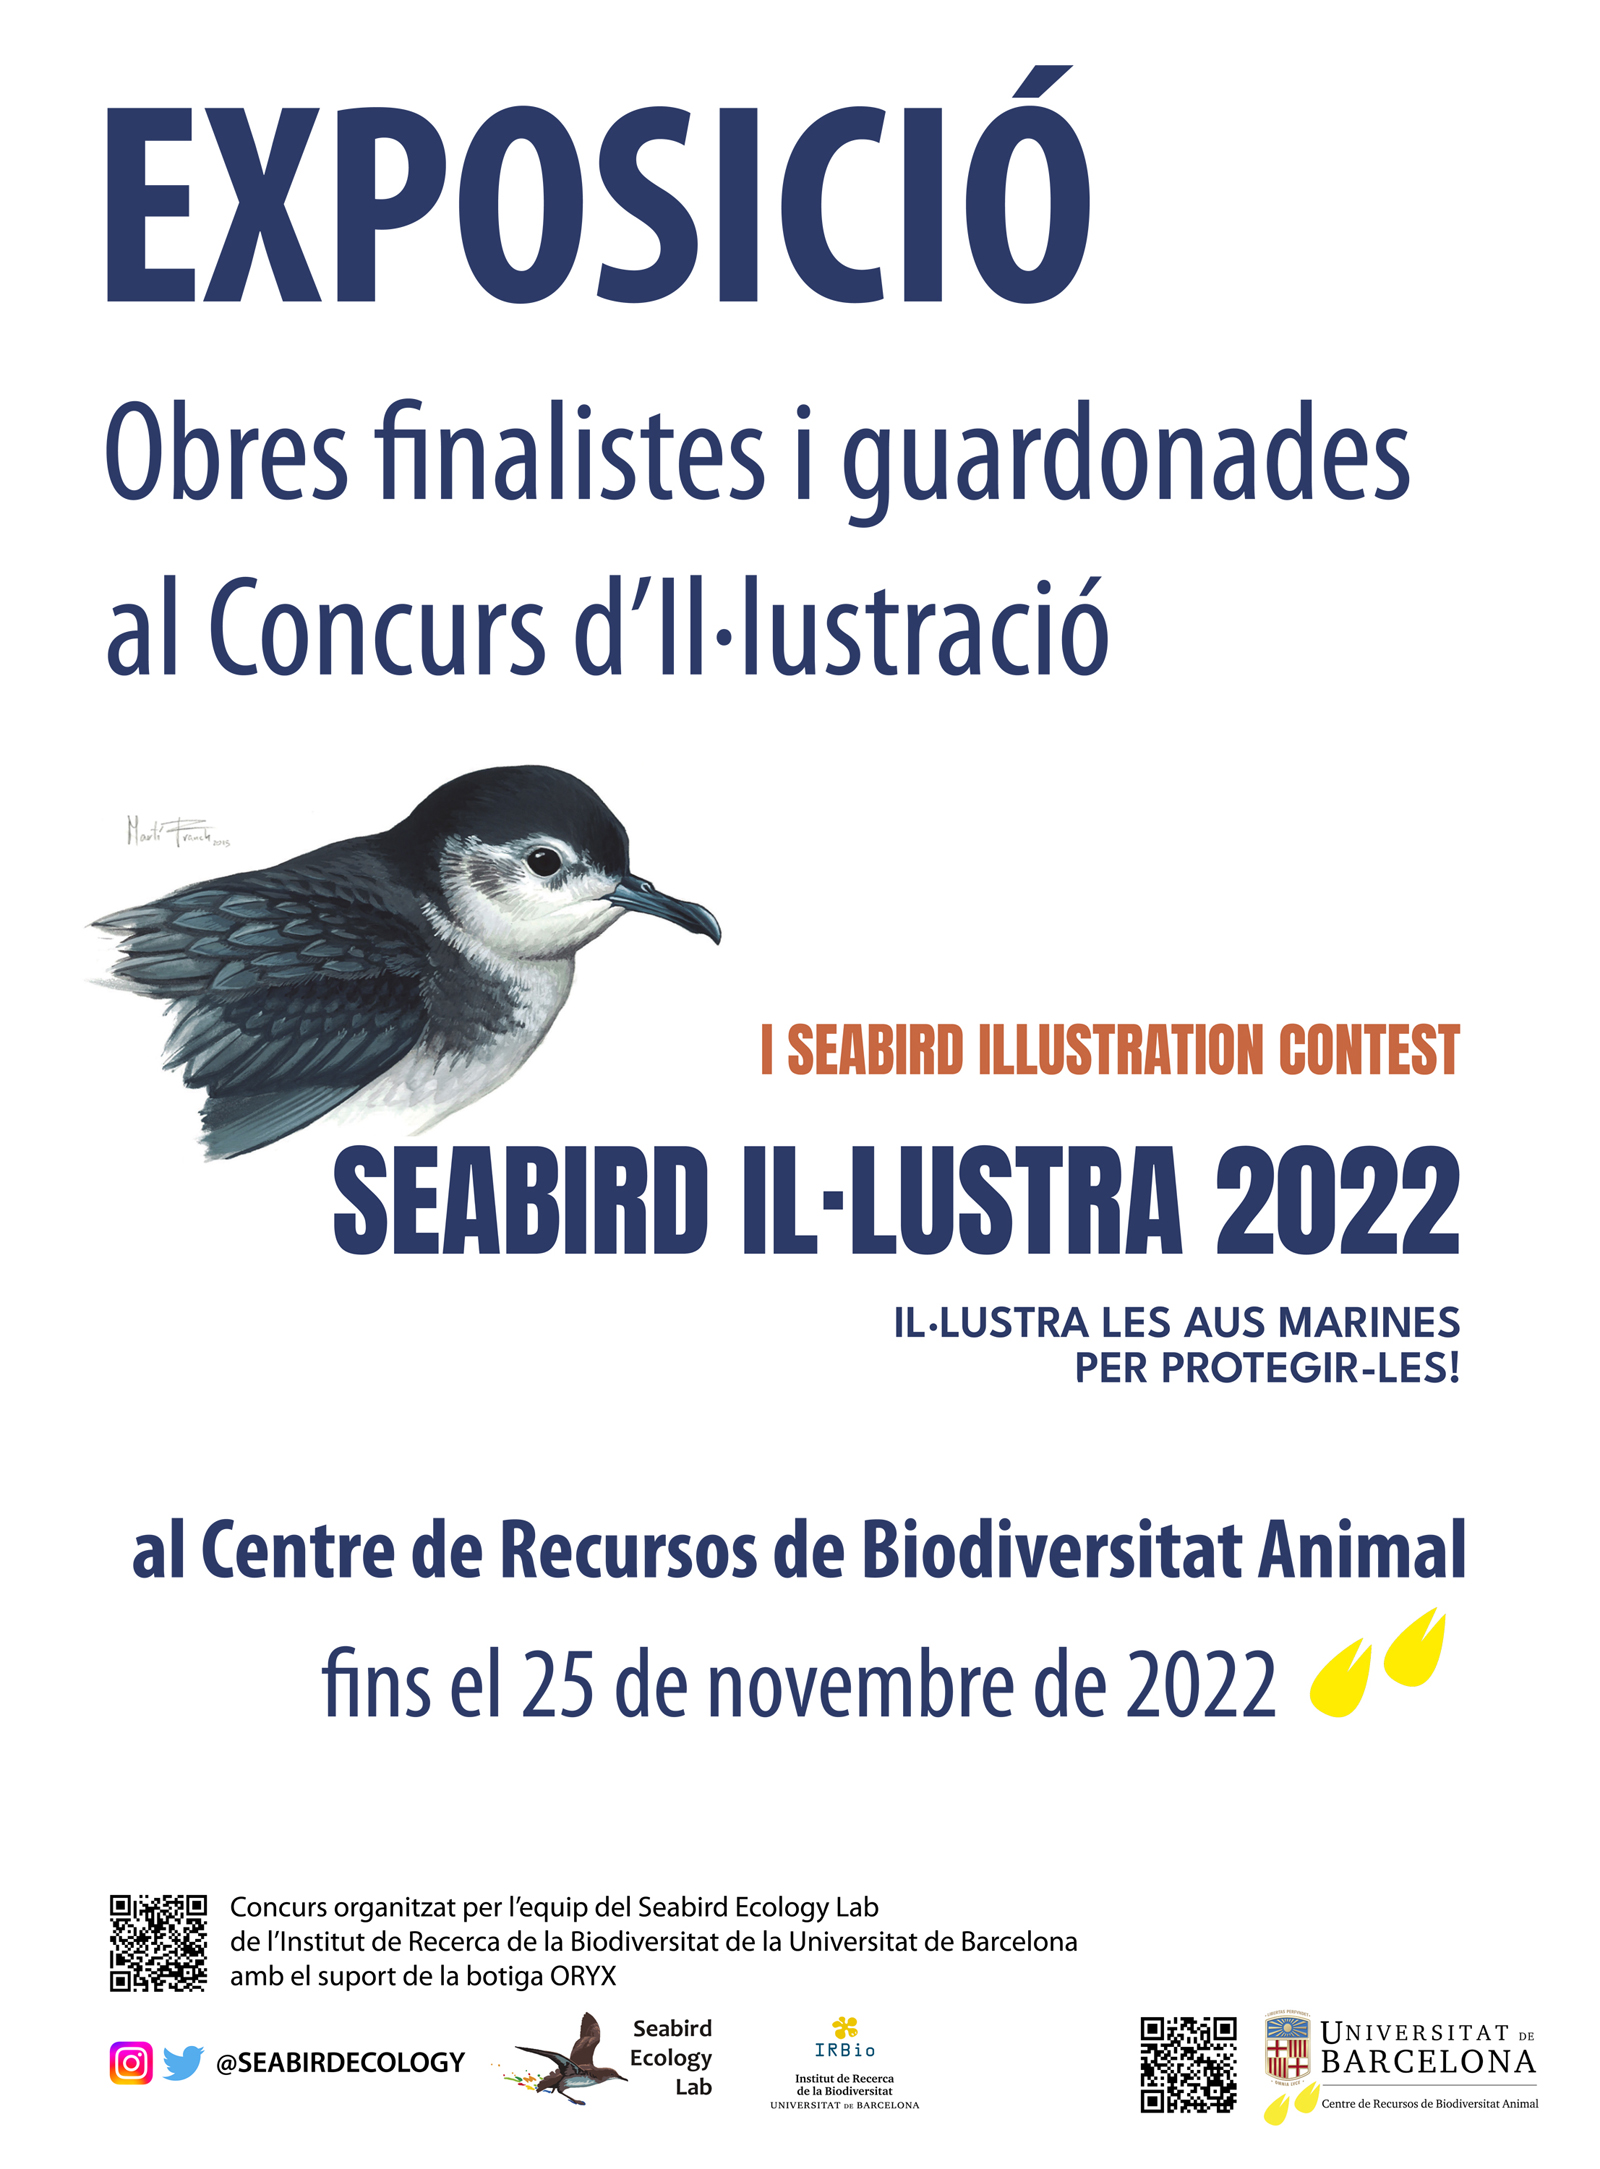 Seabird Ilustra 2022